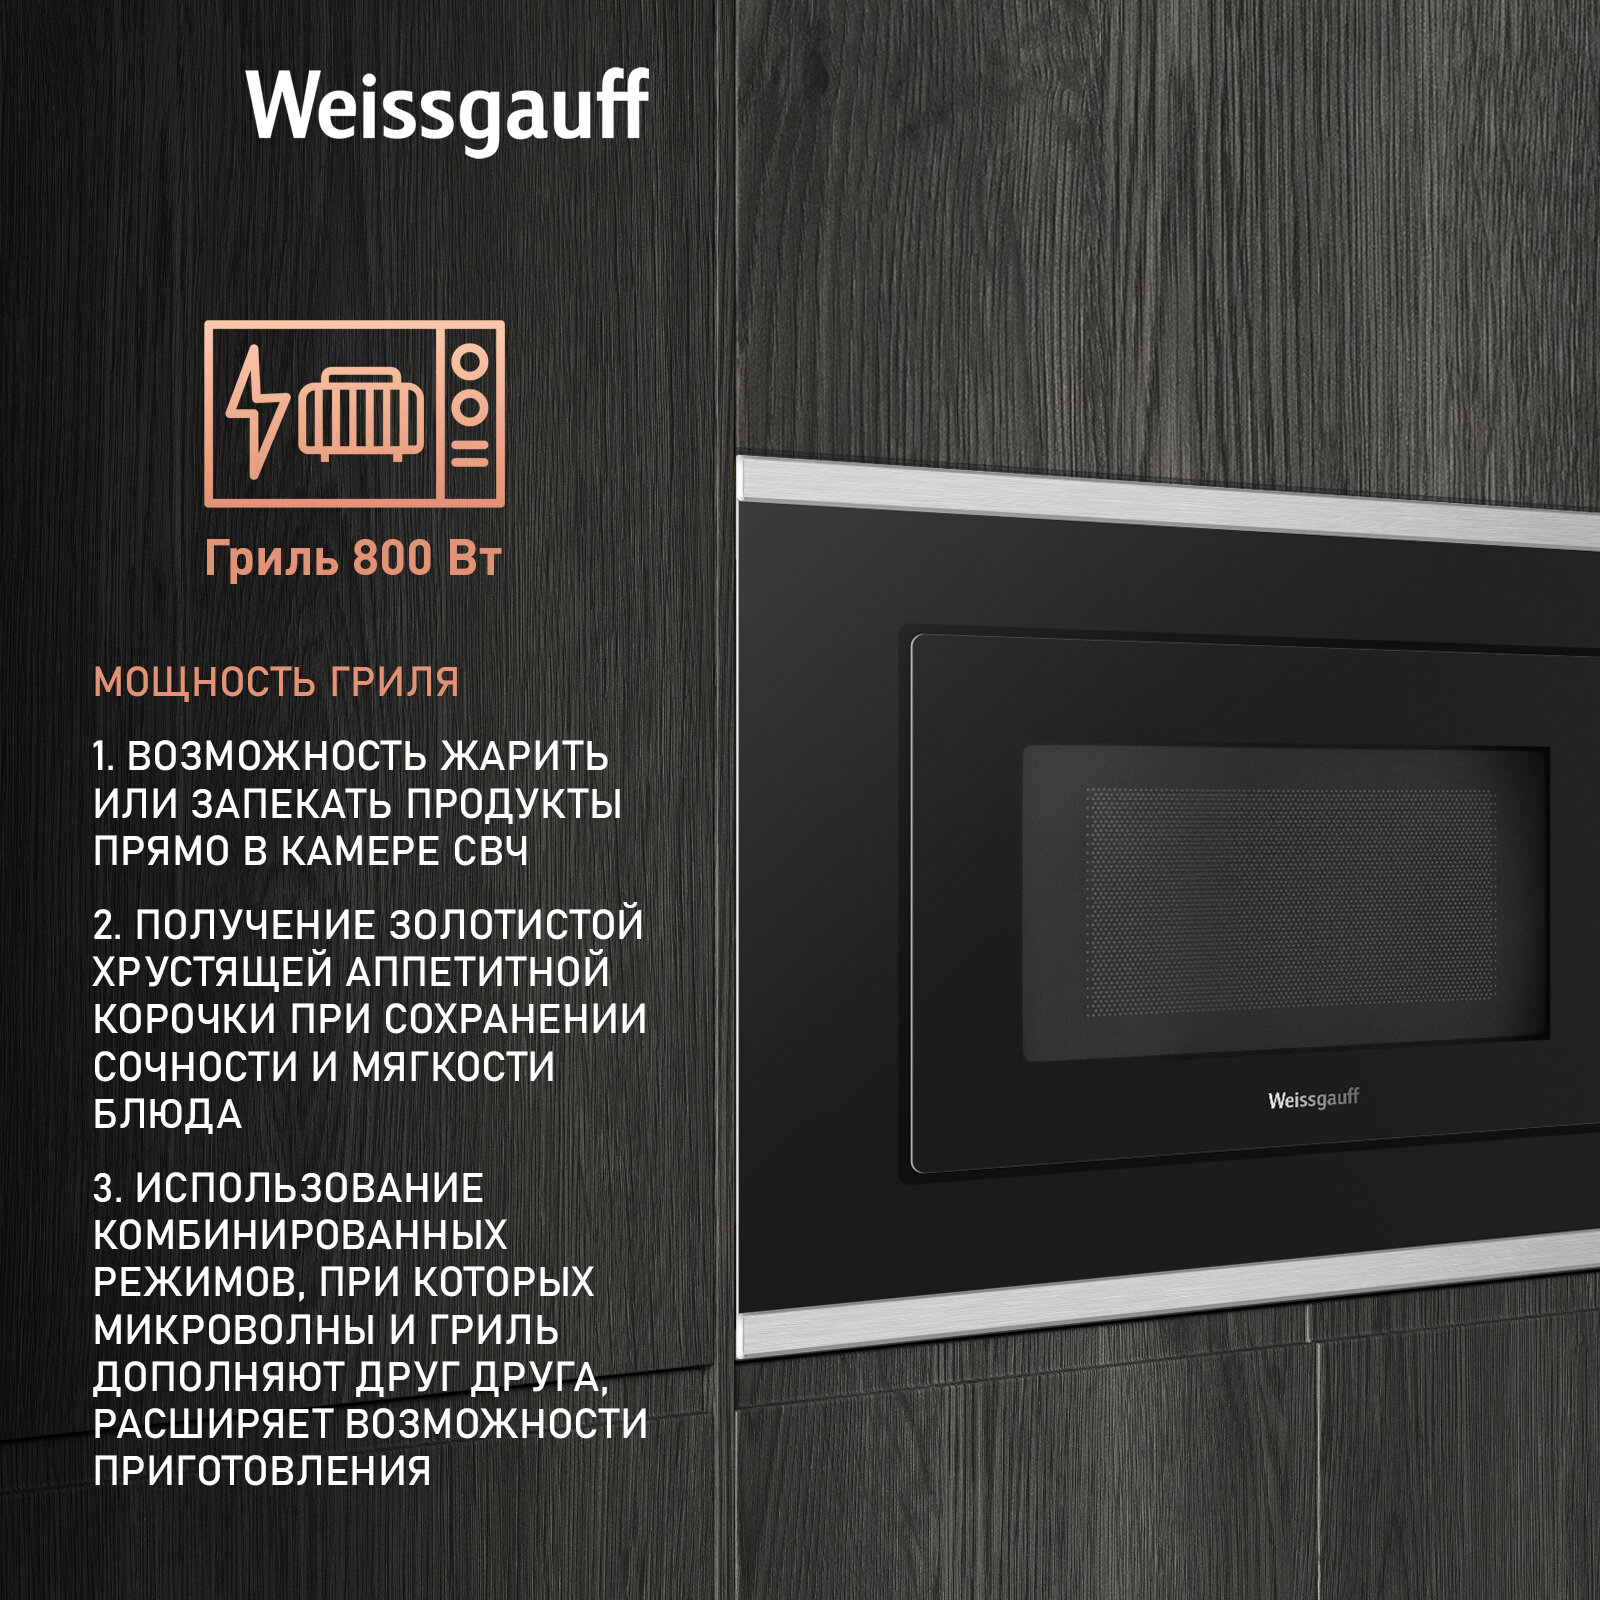 Встраиваемая микроволновая печь Weissgauff HMT-2017 Grill 3 года гарантии, объем 20 литров, гриль, разморозка по весу